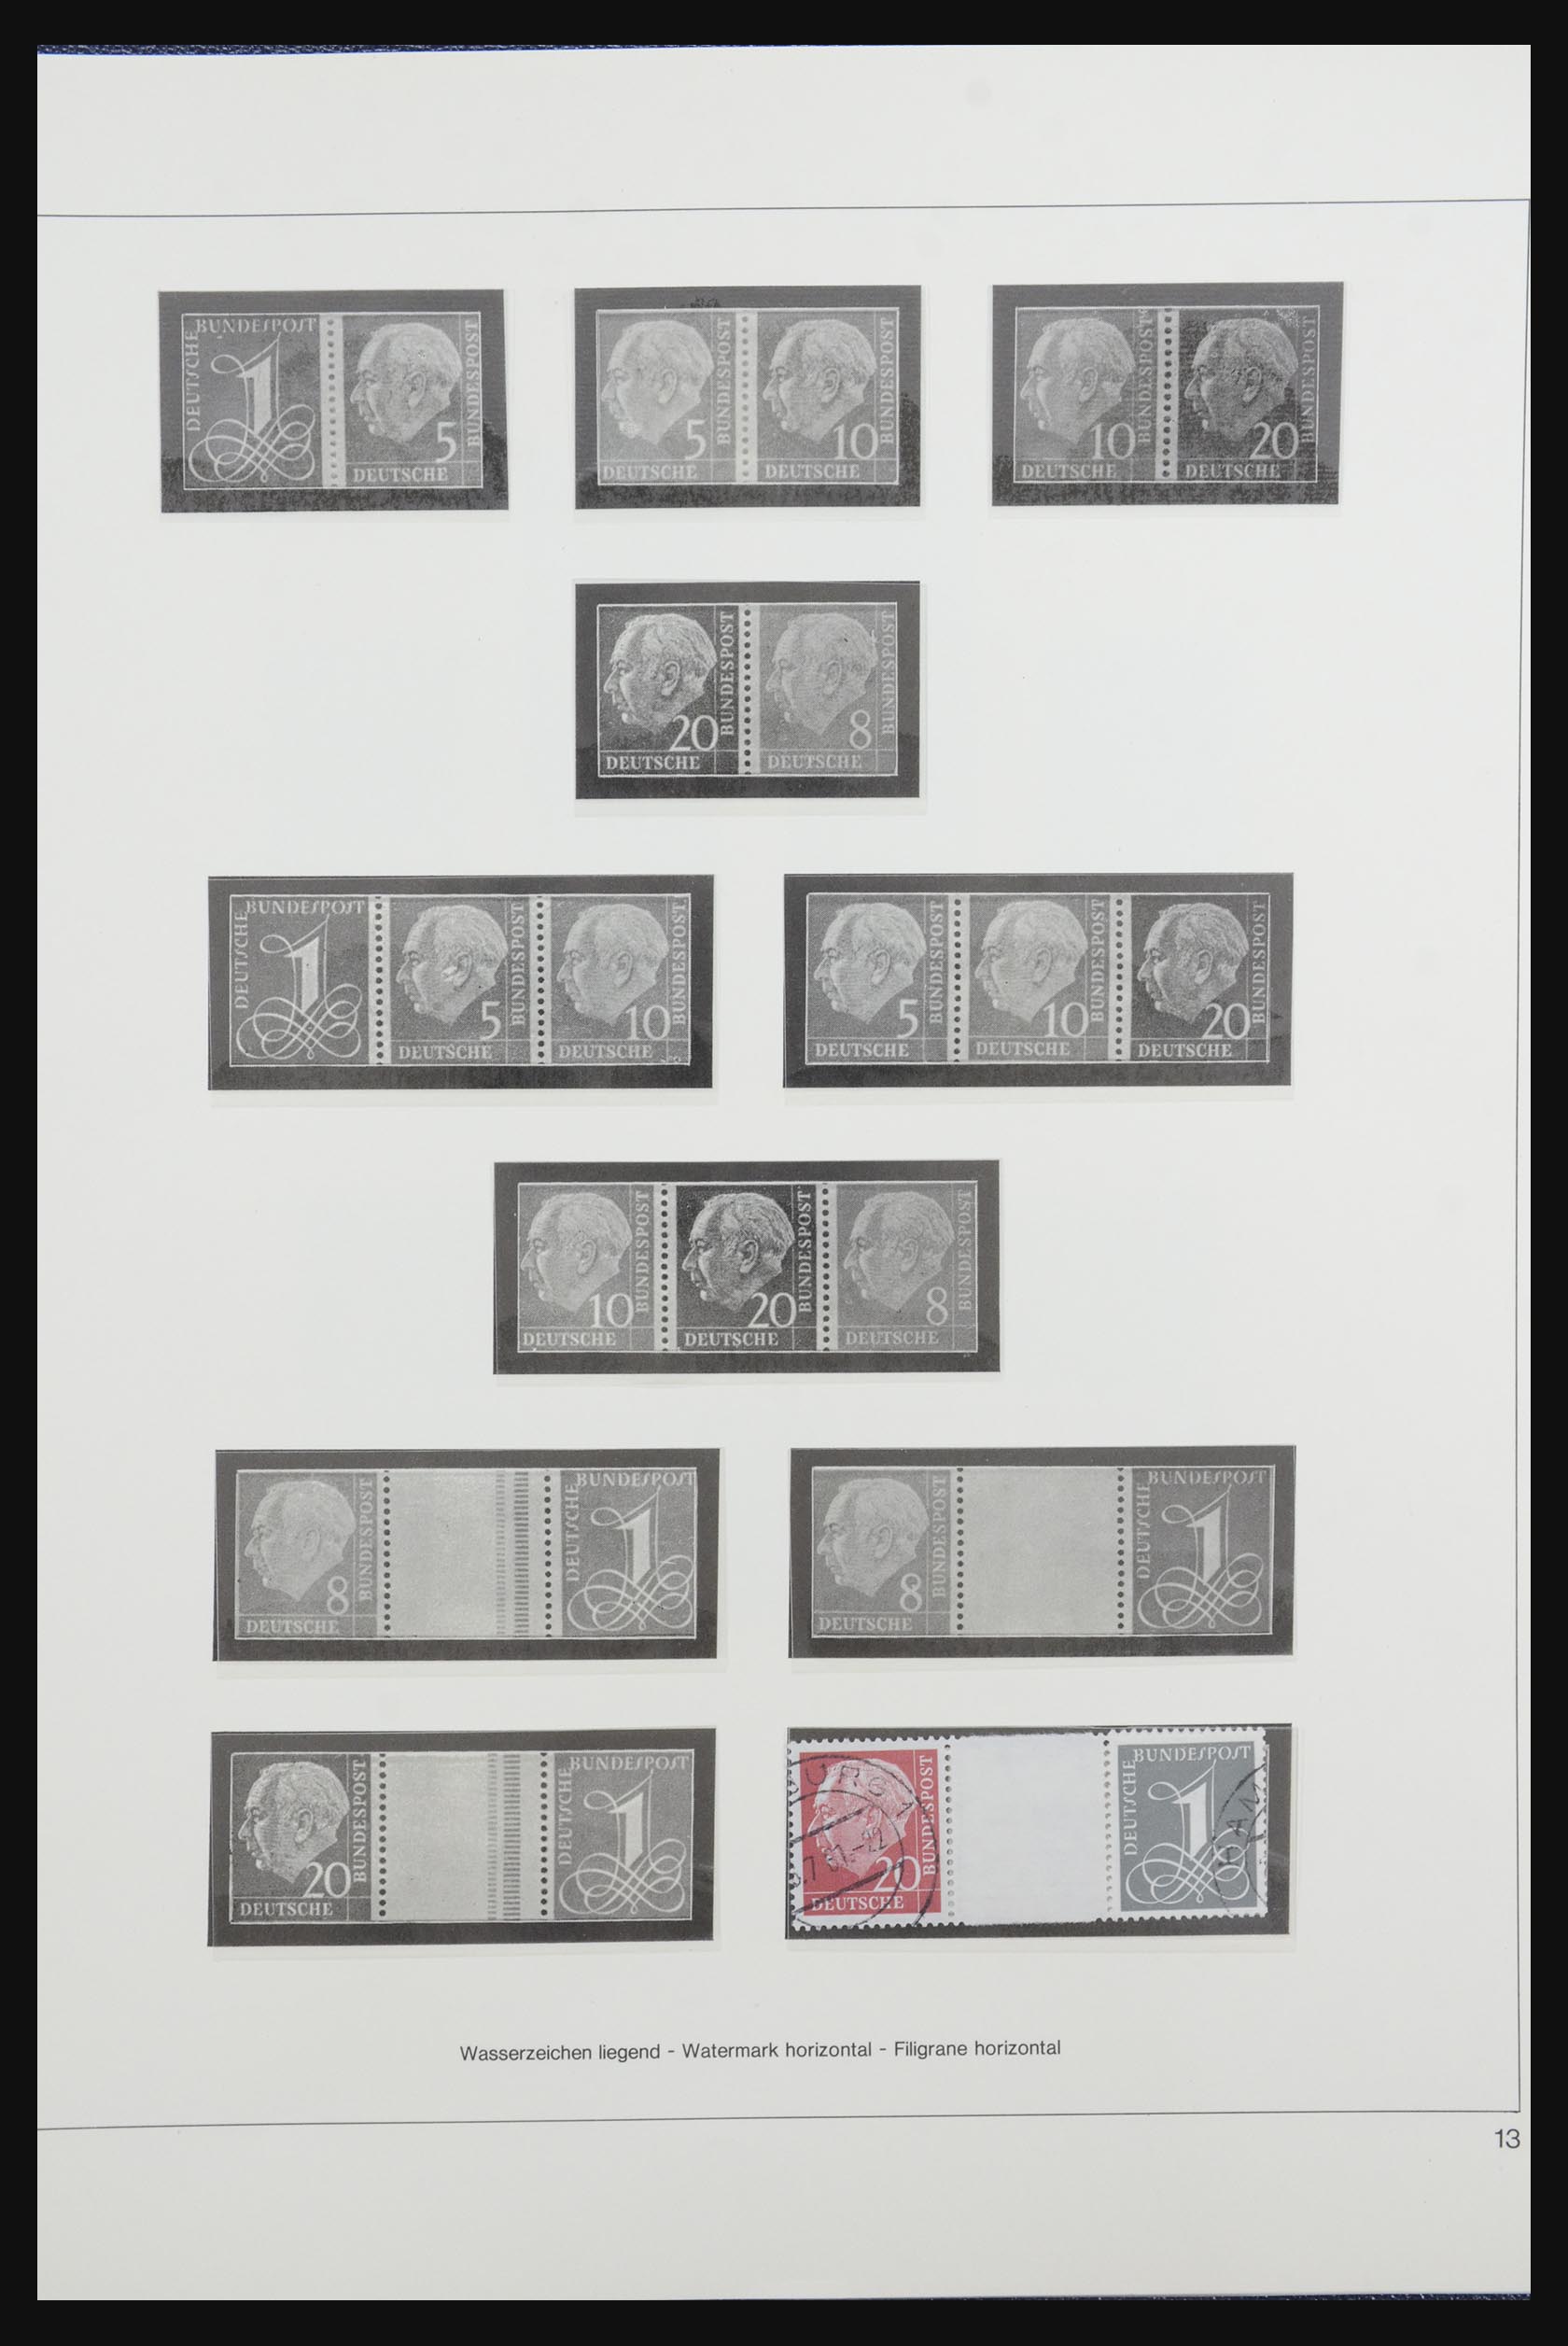 31842 016 - 31842 Bundespost combinaties 1951-2003.